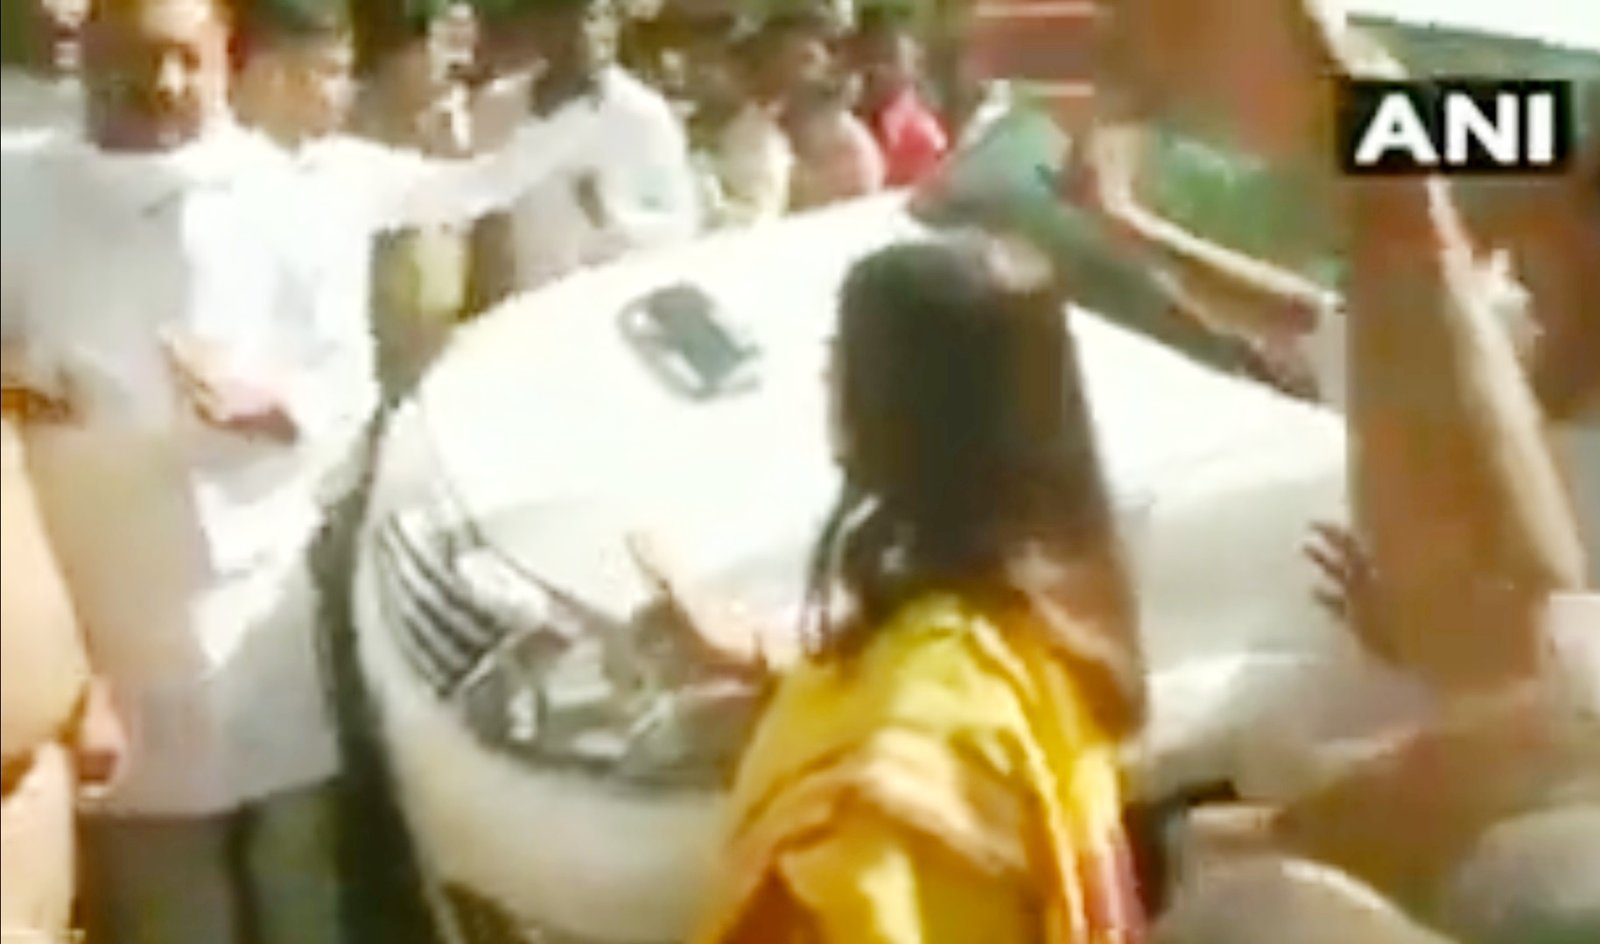 सुल्तानपुर में BJP प्रत्याशी मेनका गांधी और महागठबंधन उम्मीदवार सोनू सिंह में तीखी बहस, पुलिस ने किया लाठीचार्ज, देखें वीडियो-